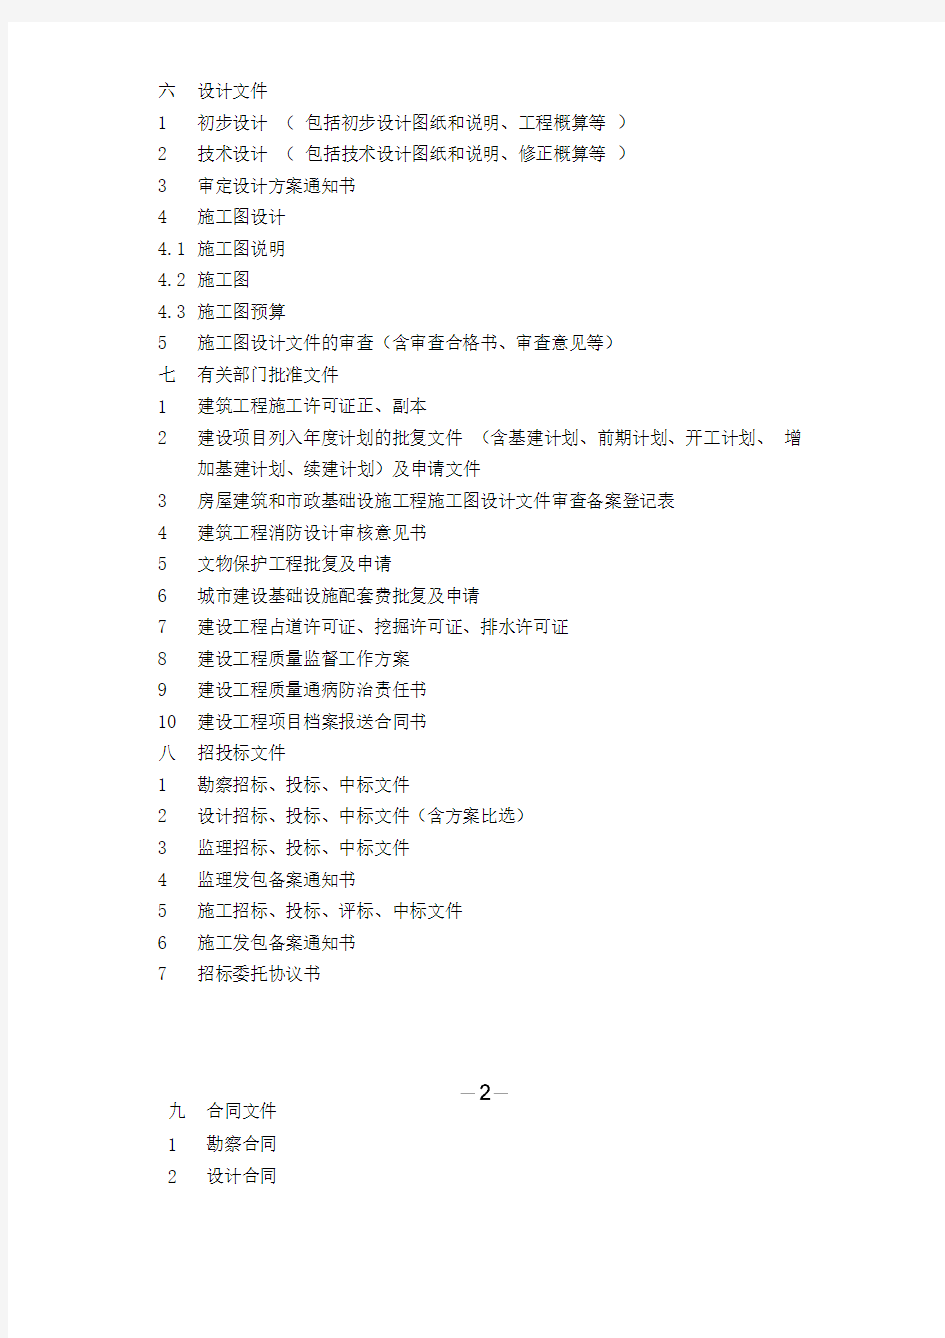 宜昌市建设工程文件归档内容及排列顺序